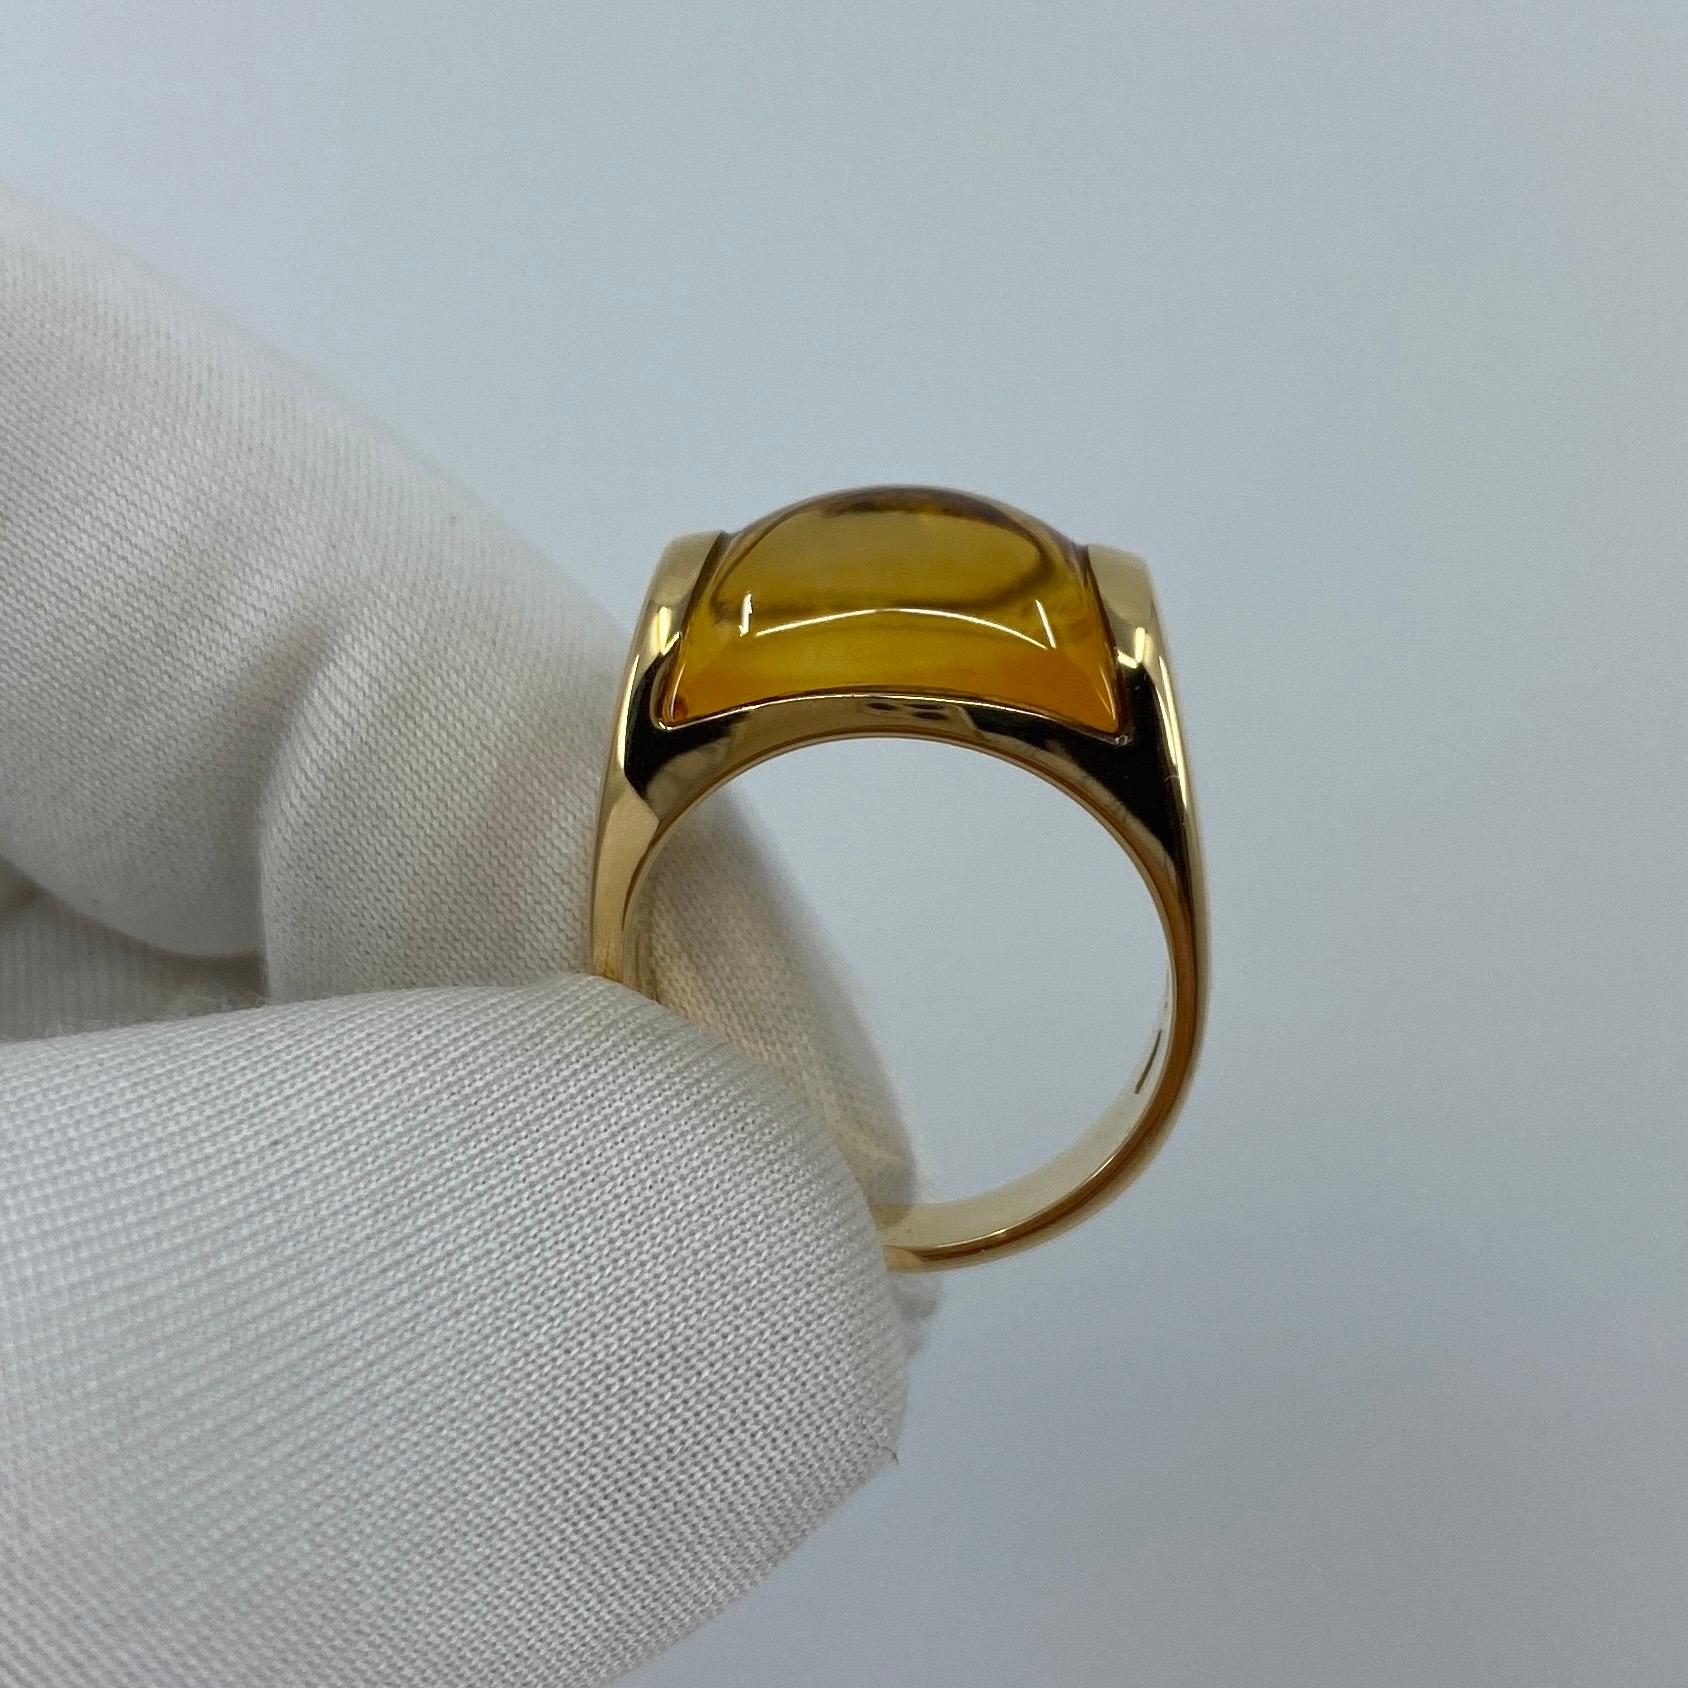 Bvlgari Bulgari Tronchetto 18 Karat Yellow Gold Orange Citrine Ring with Box 4